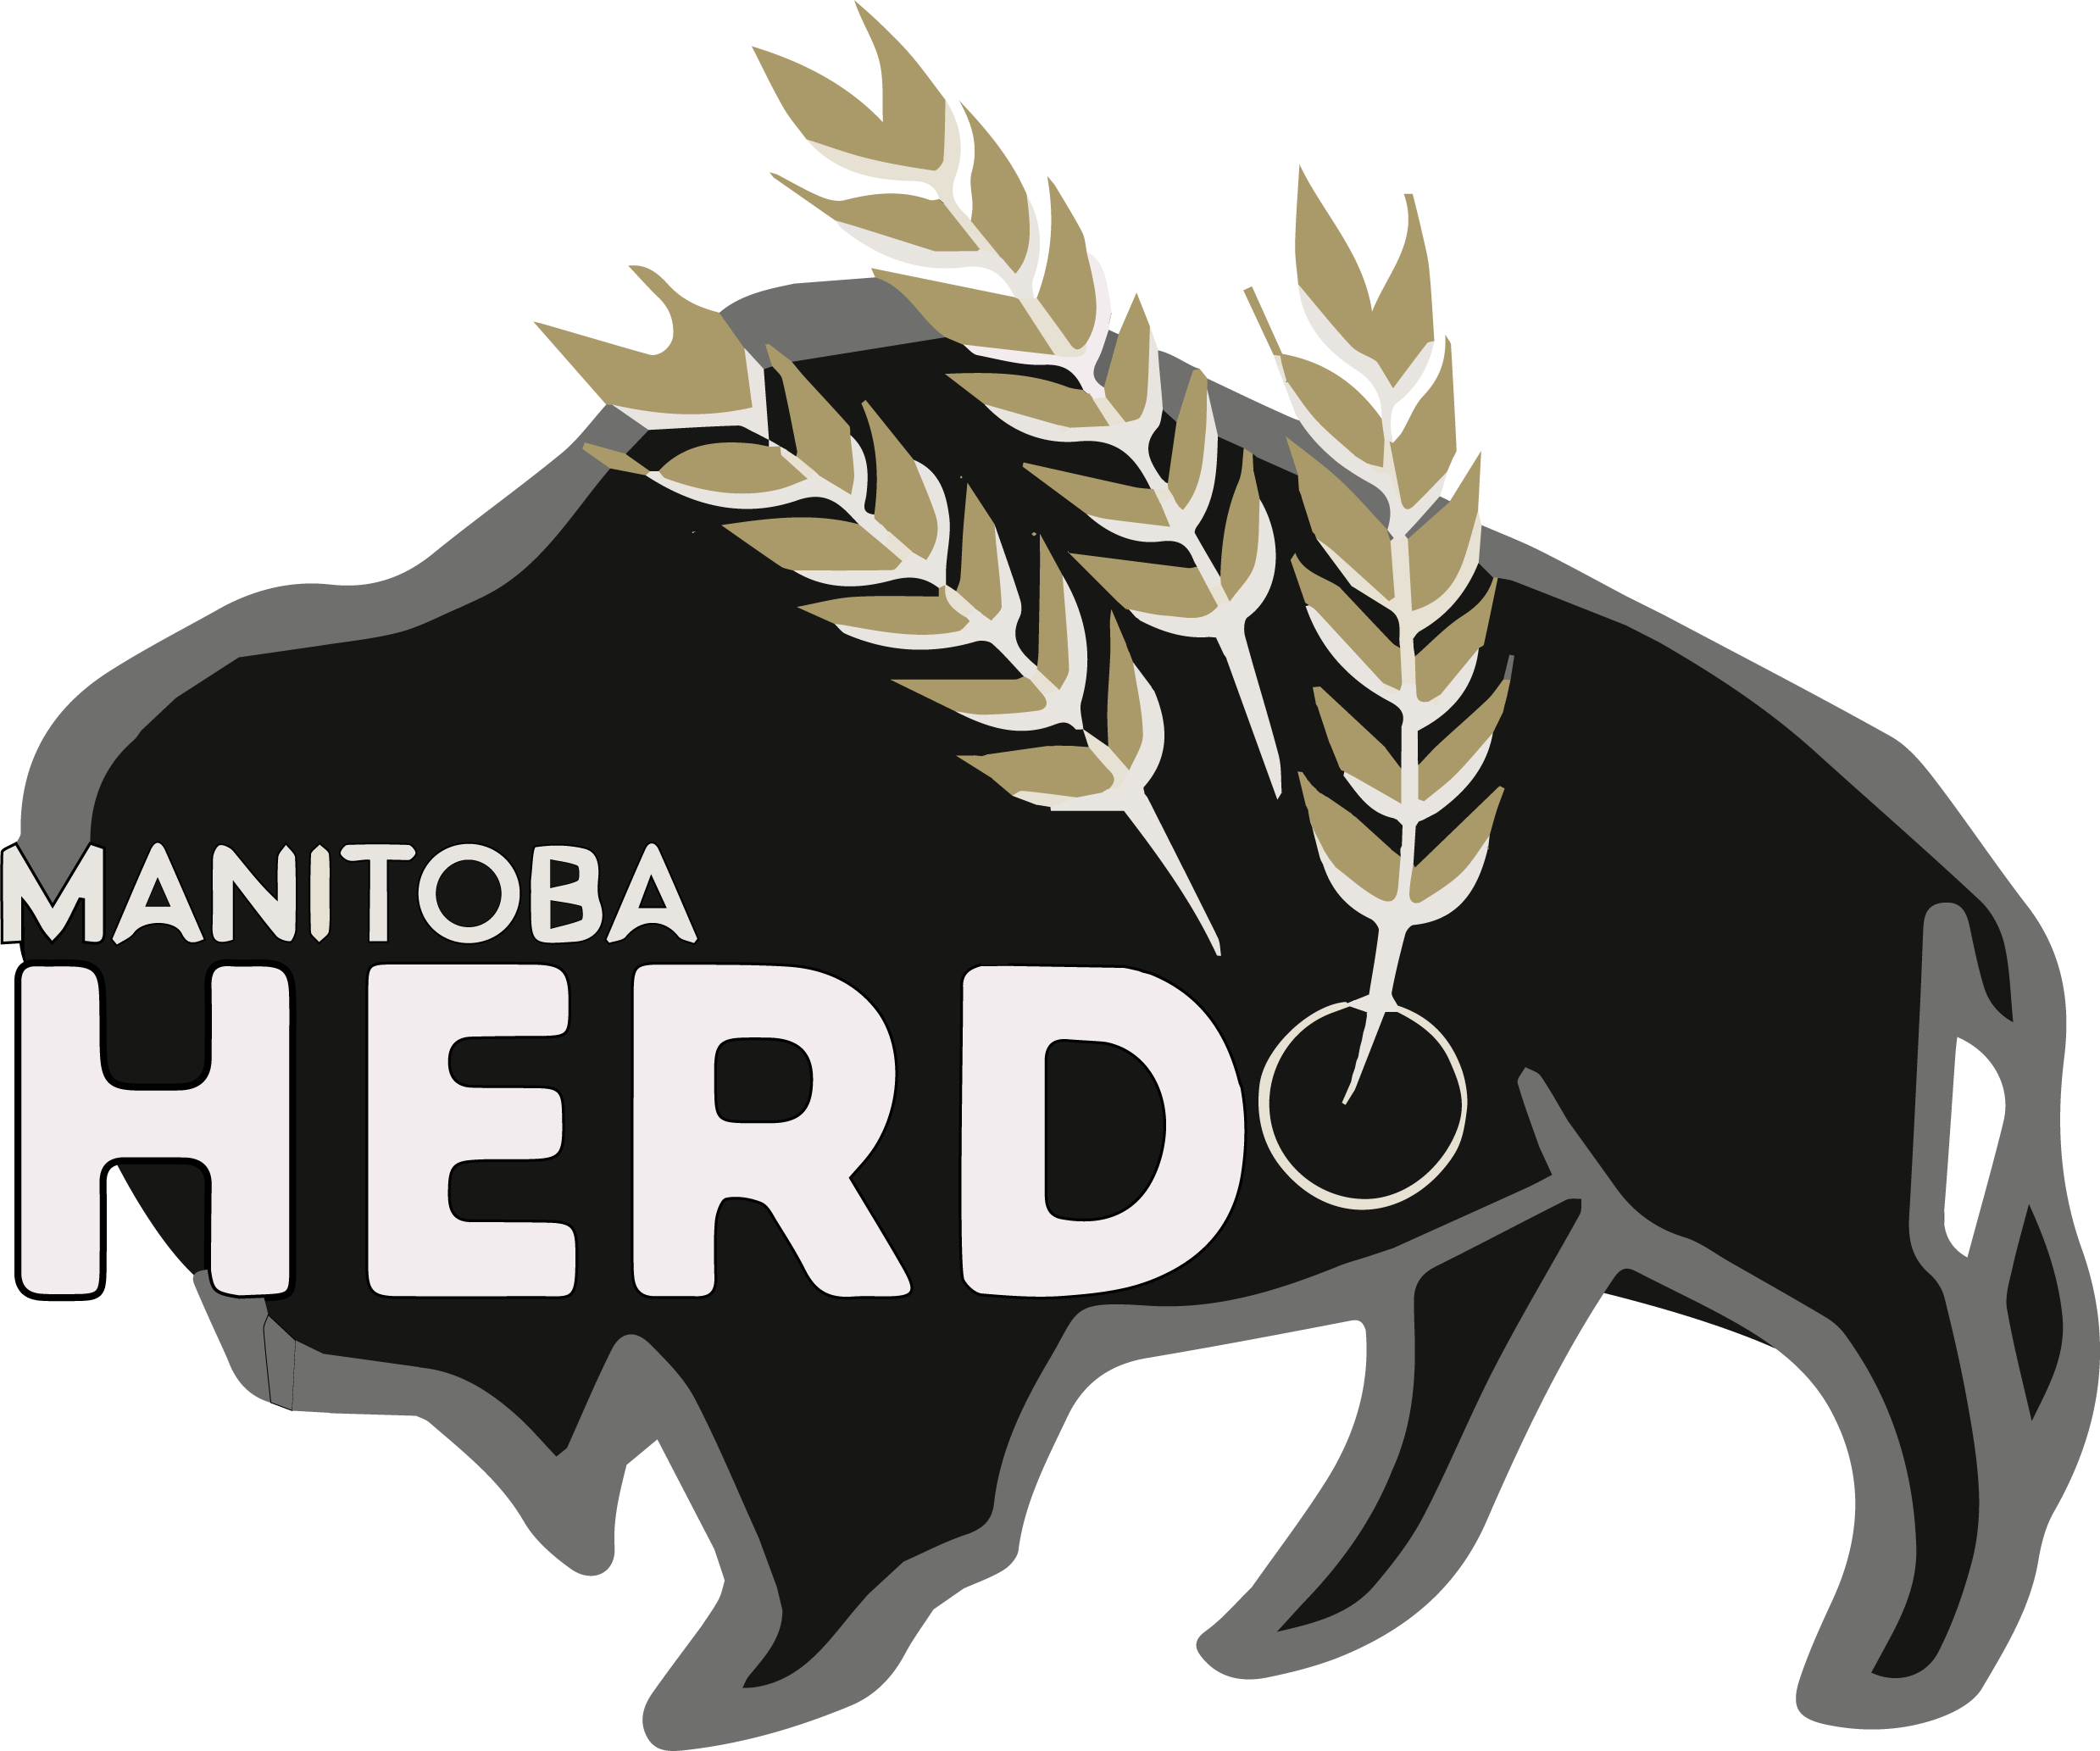 Manitoba Herd